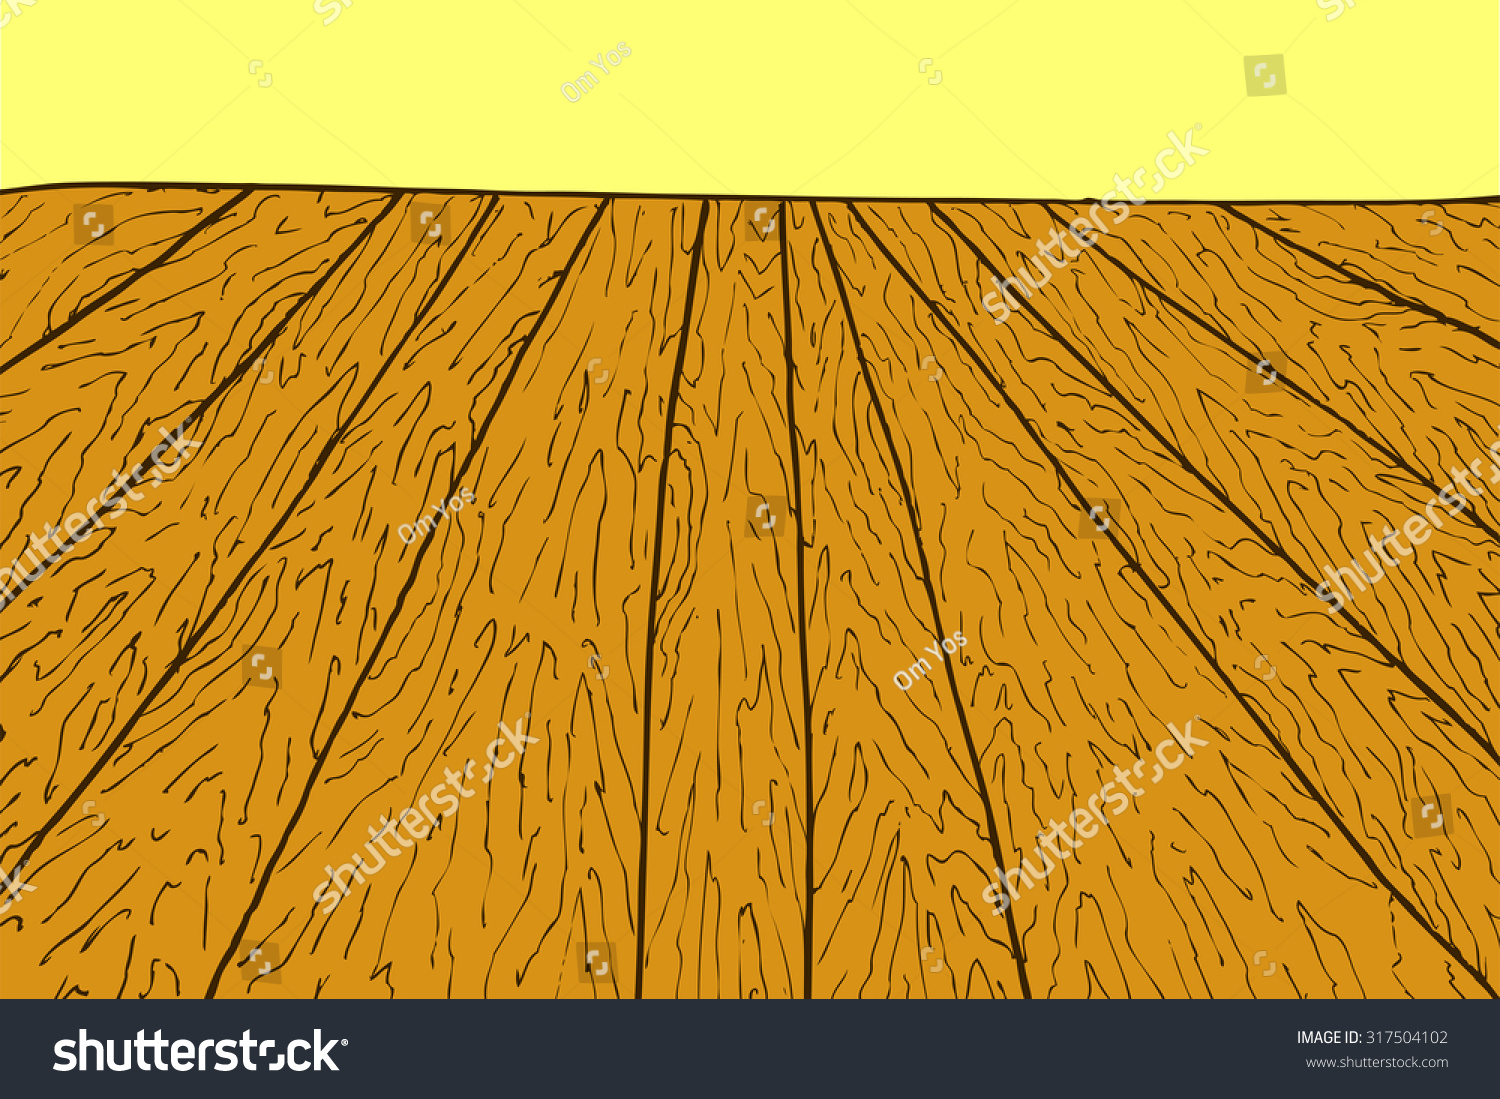 Dark Wood Floor Horizontal Perspective Stock Vectors Images